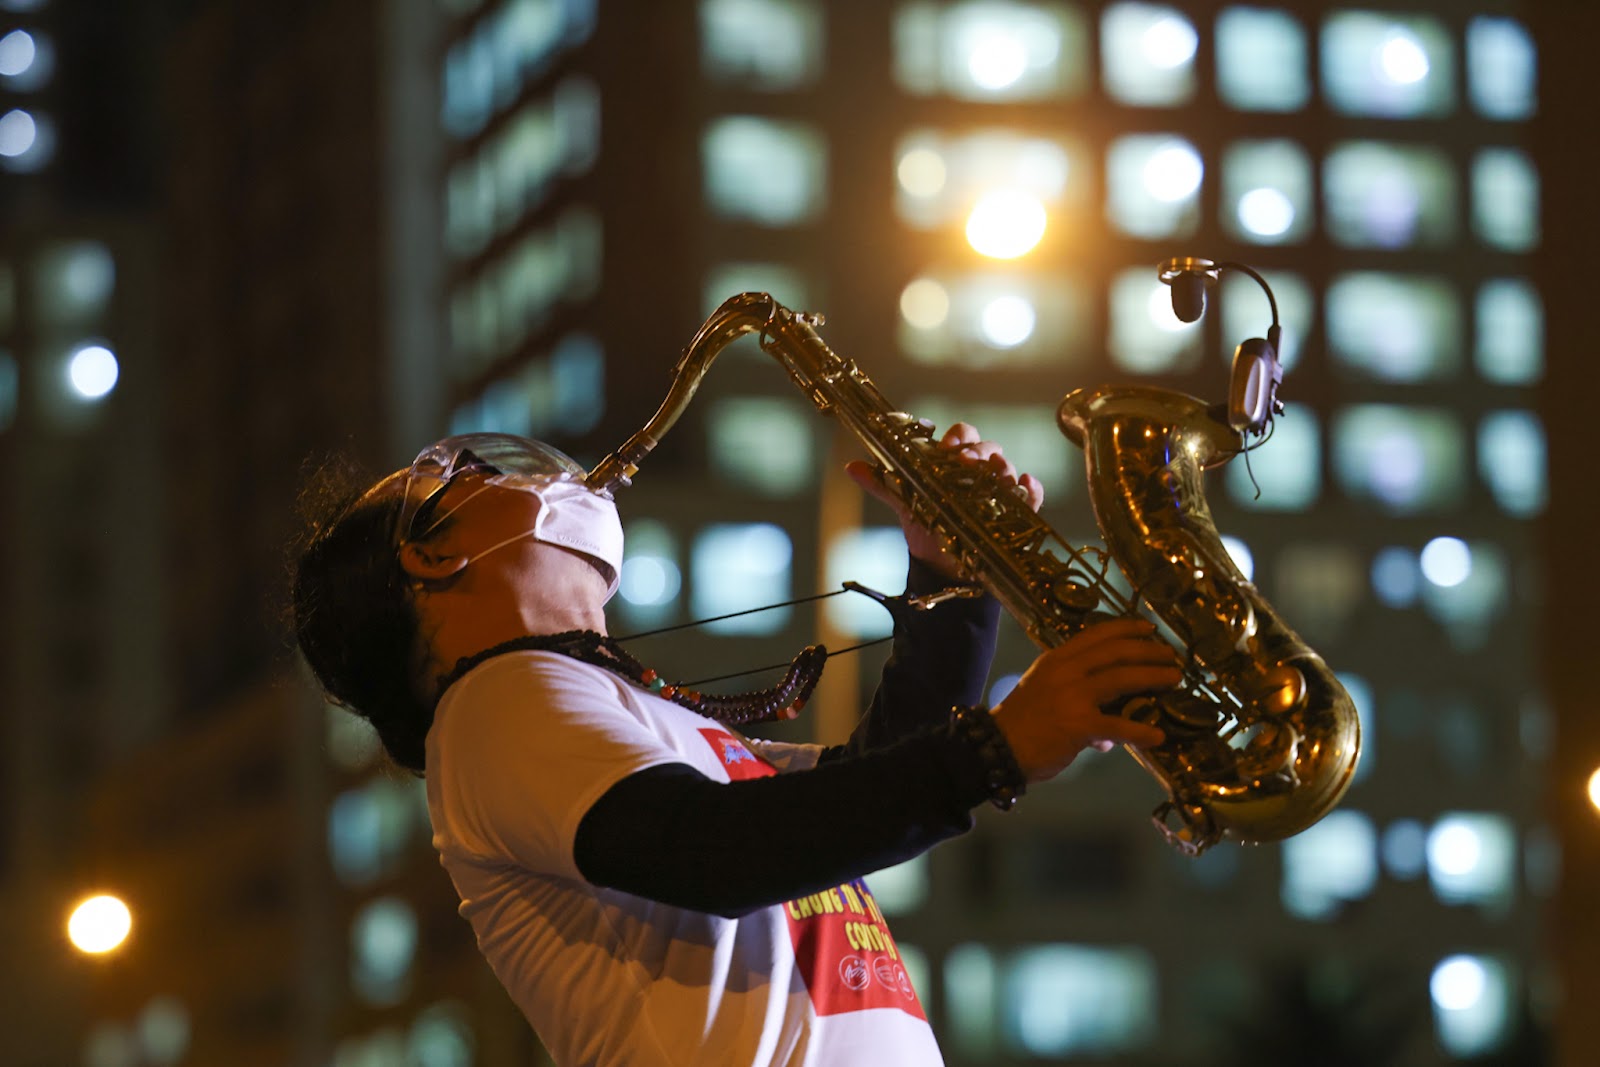 Đêm không quên của nghệ sĩ saxophone Trần Mạnh Tuấn ở bệnh viện dã chiến - 2